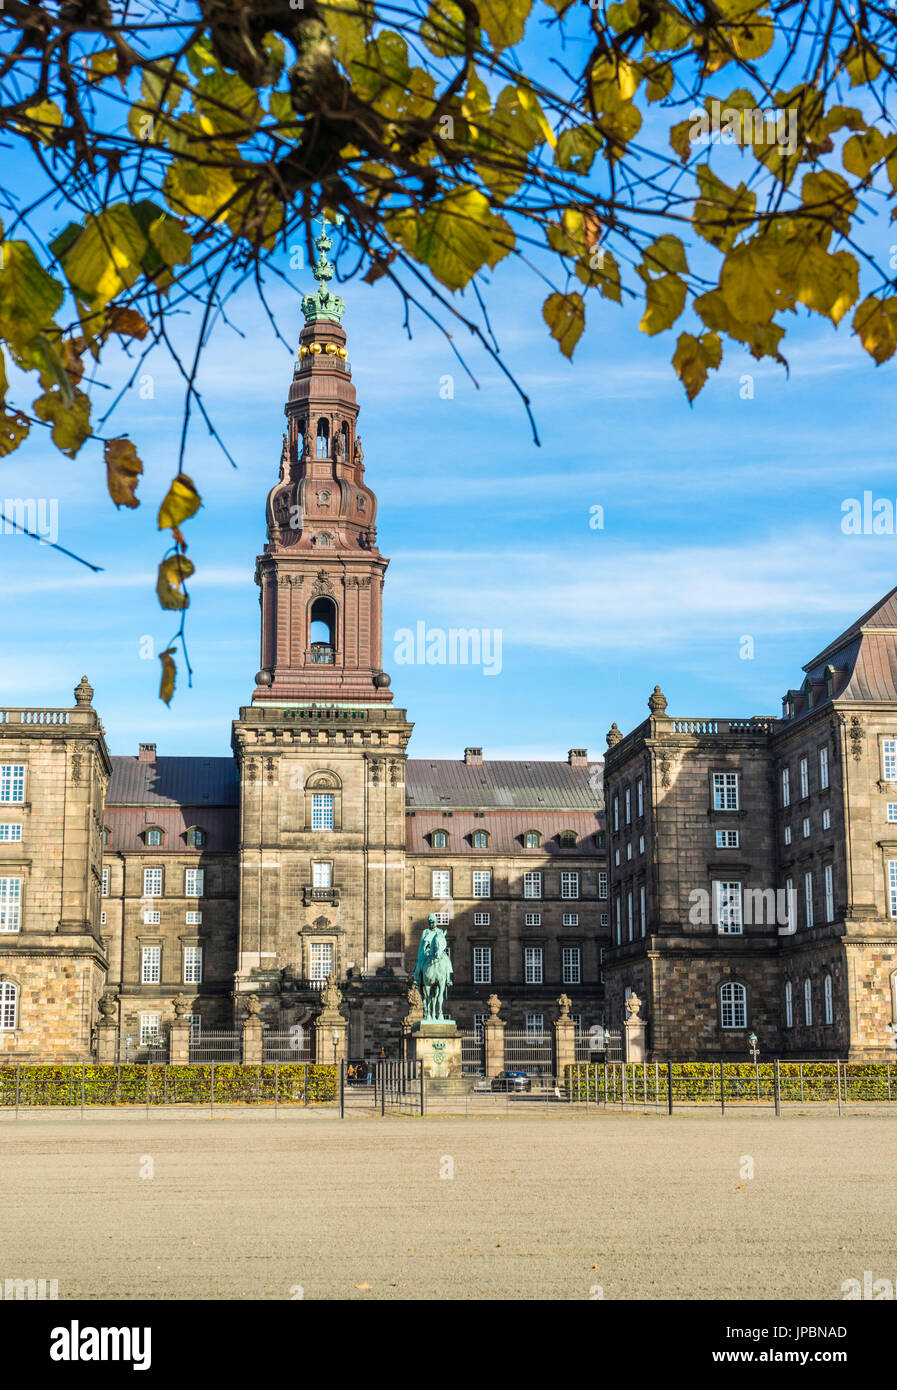 Copenhague, Hovedstaden, Danemark, Europe du Nord. La Platz du Palais de Christiansborg, lieu du parlement danois, le Folketing, la Cour suprême et le ministère d'État Banque D'Images